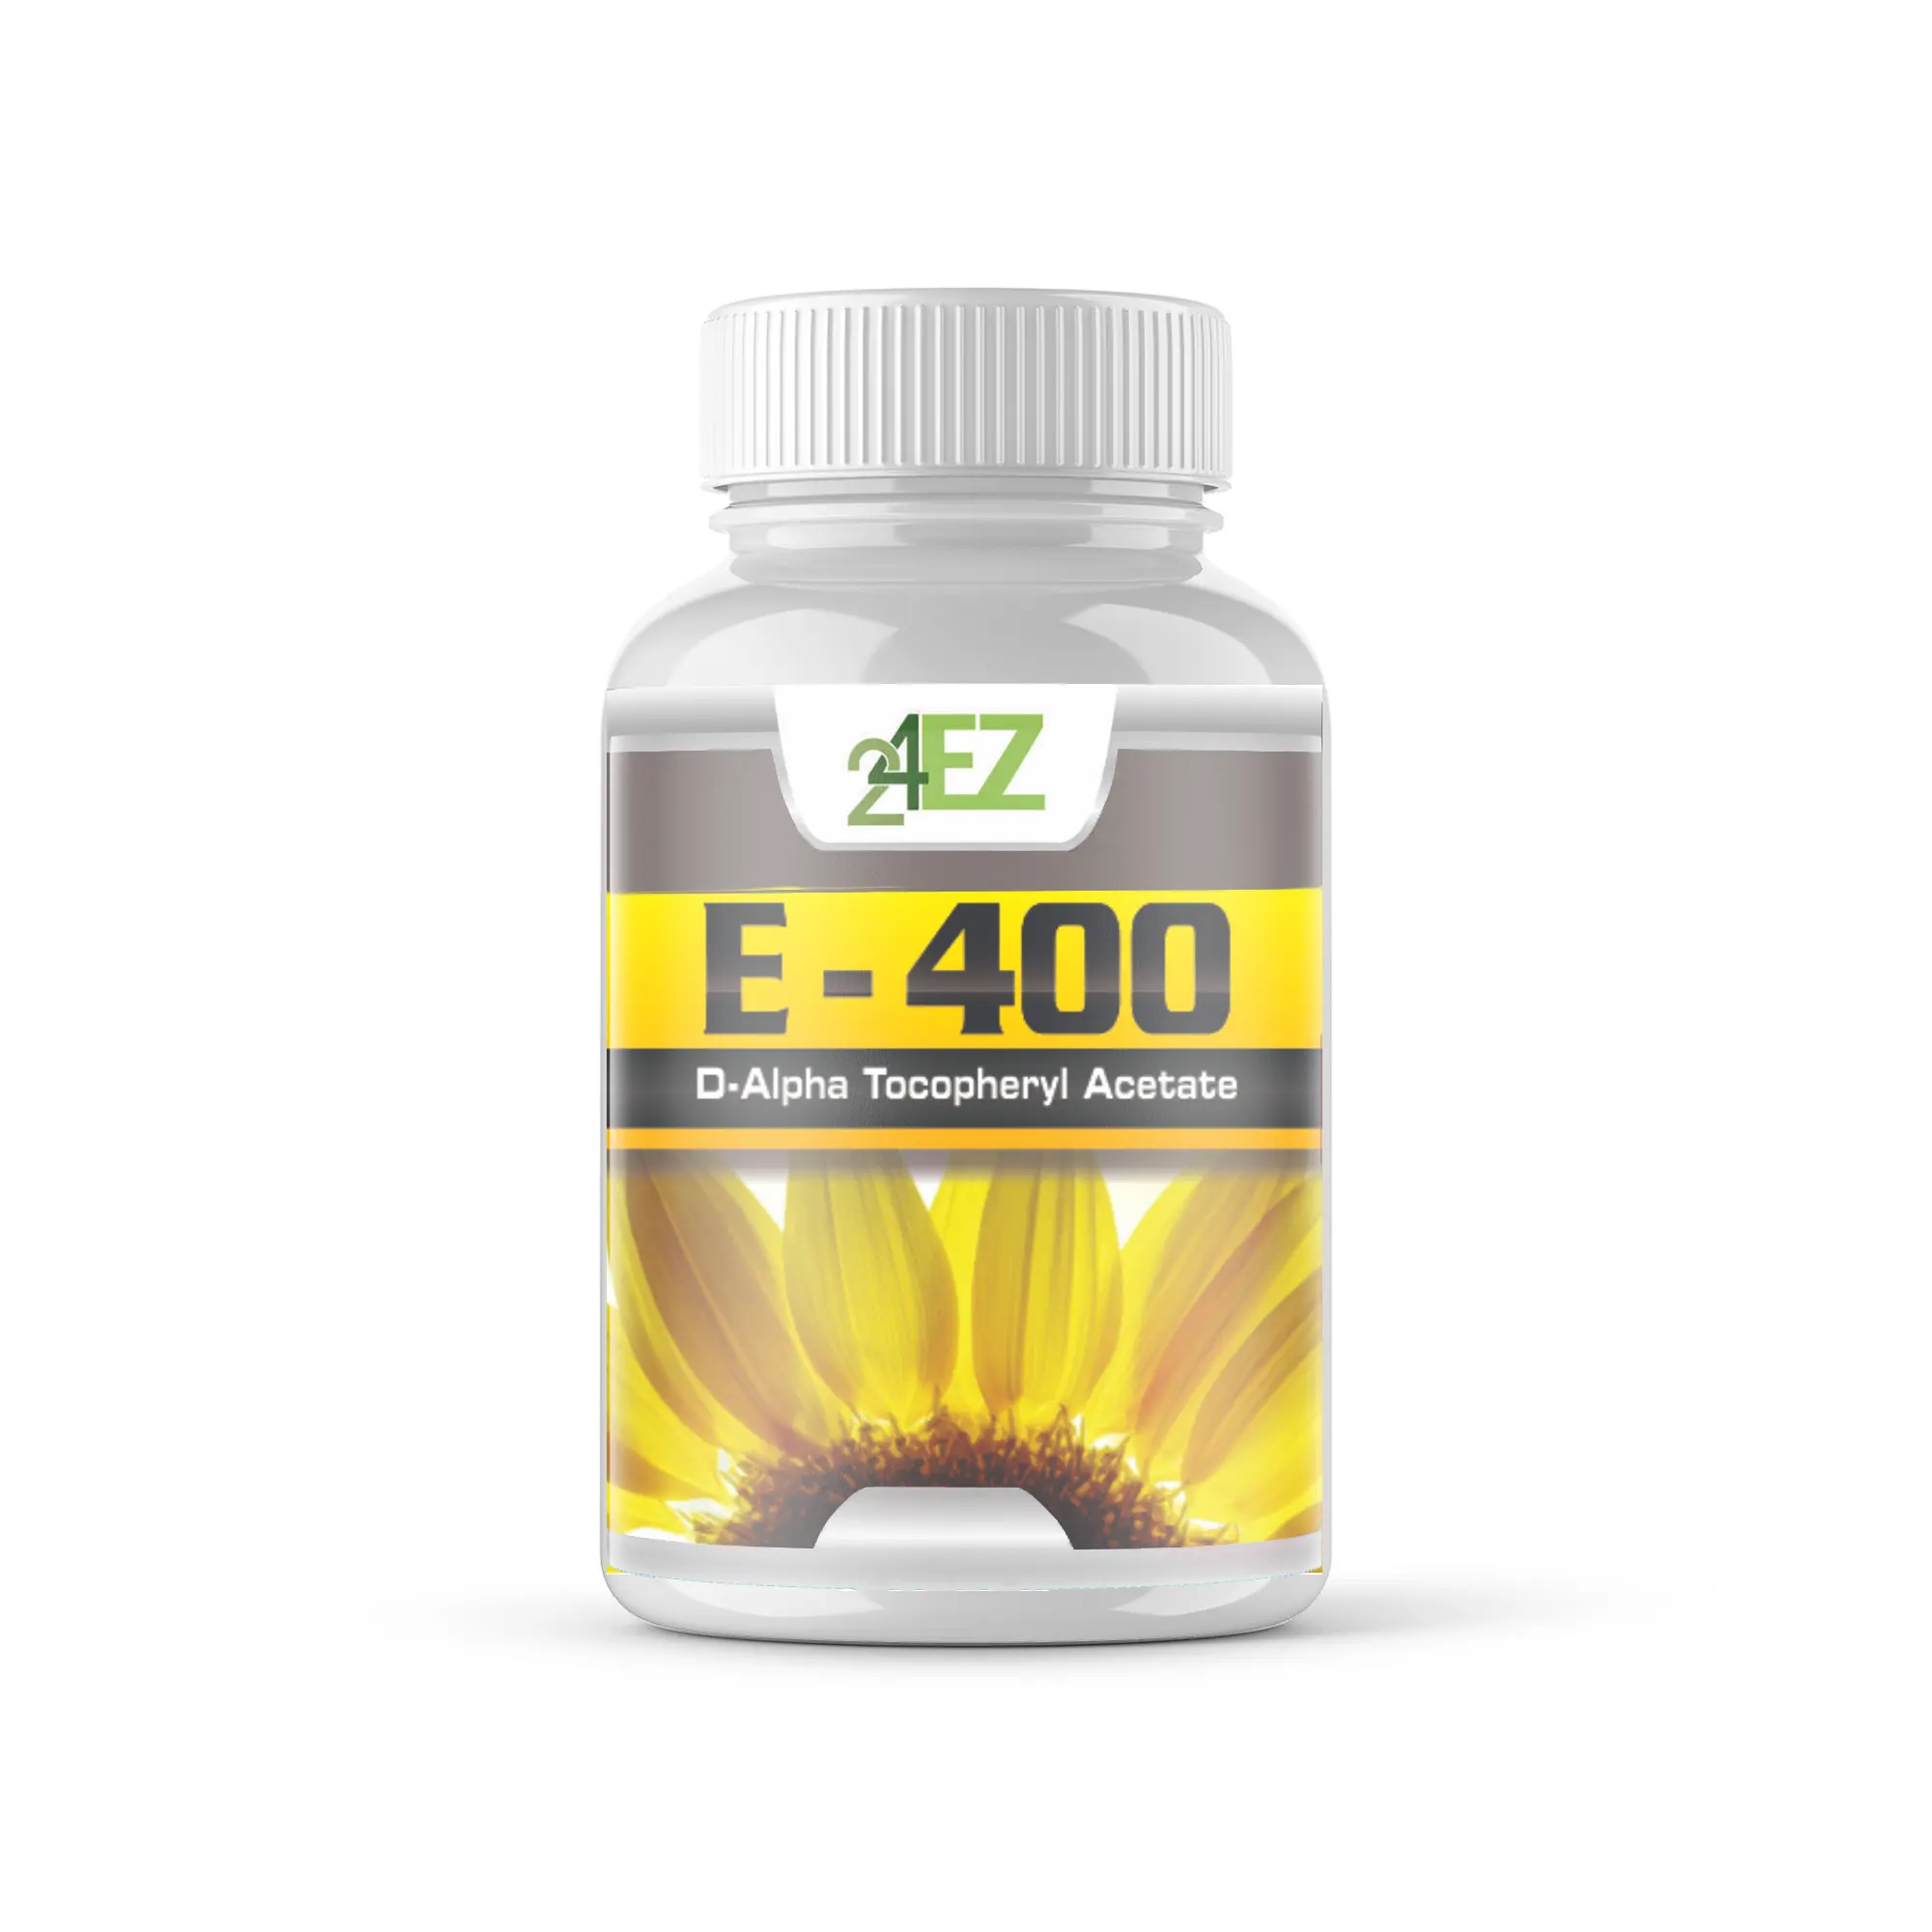 E-400 IU - E vitaminleri toptan sıcak satış organik sağlık takviyesi gummies özel etiket vitamin